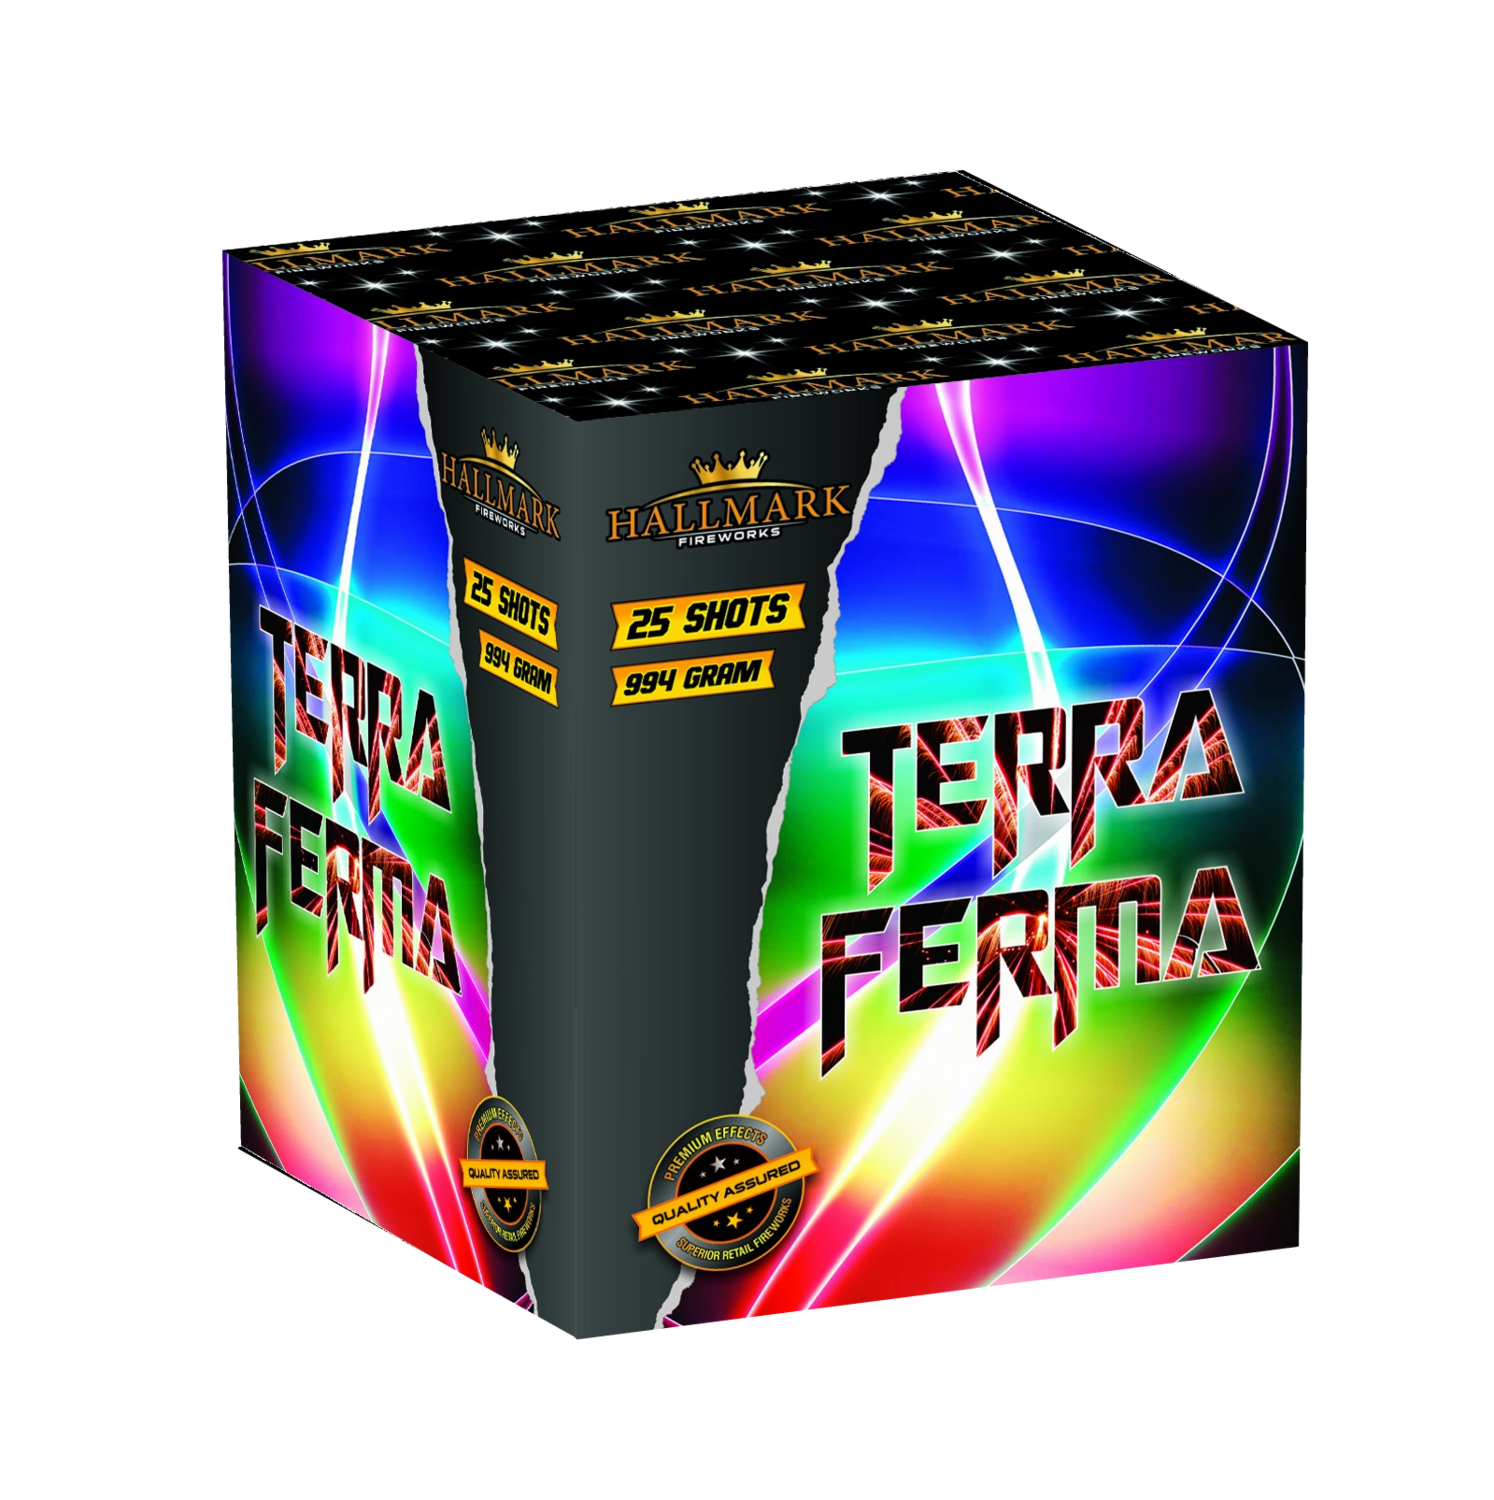 TERRA FERMA (25 SHOTS)